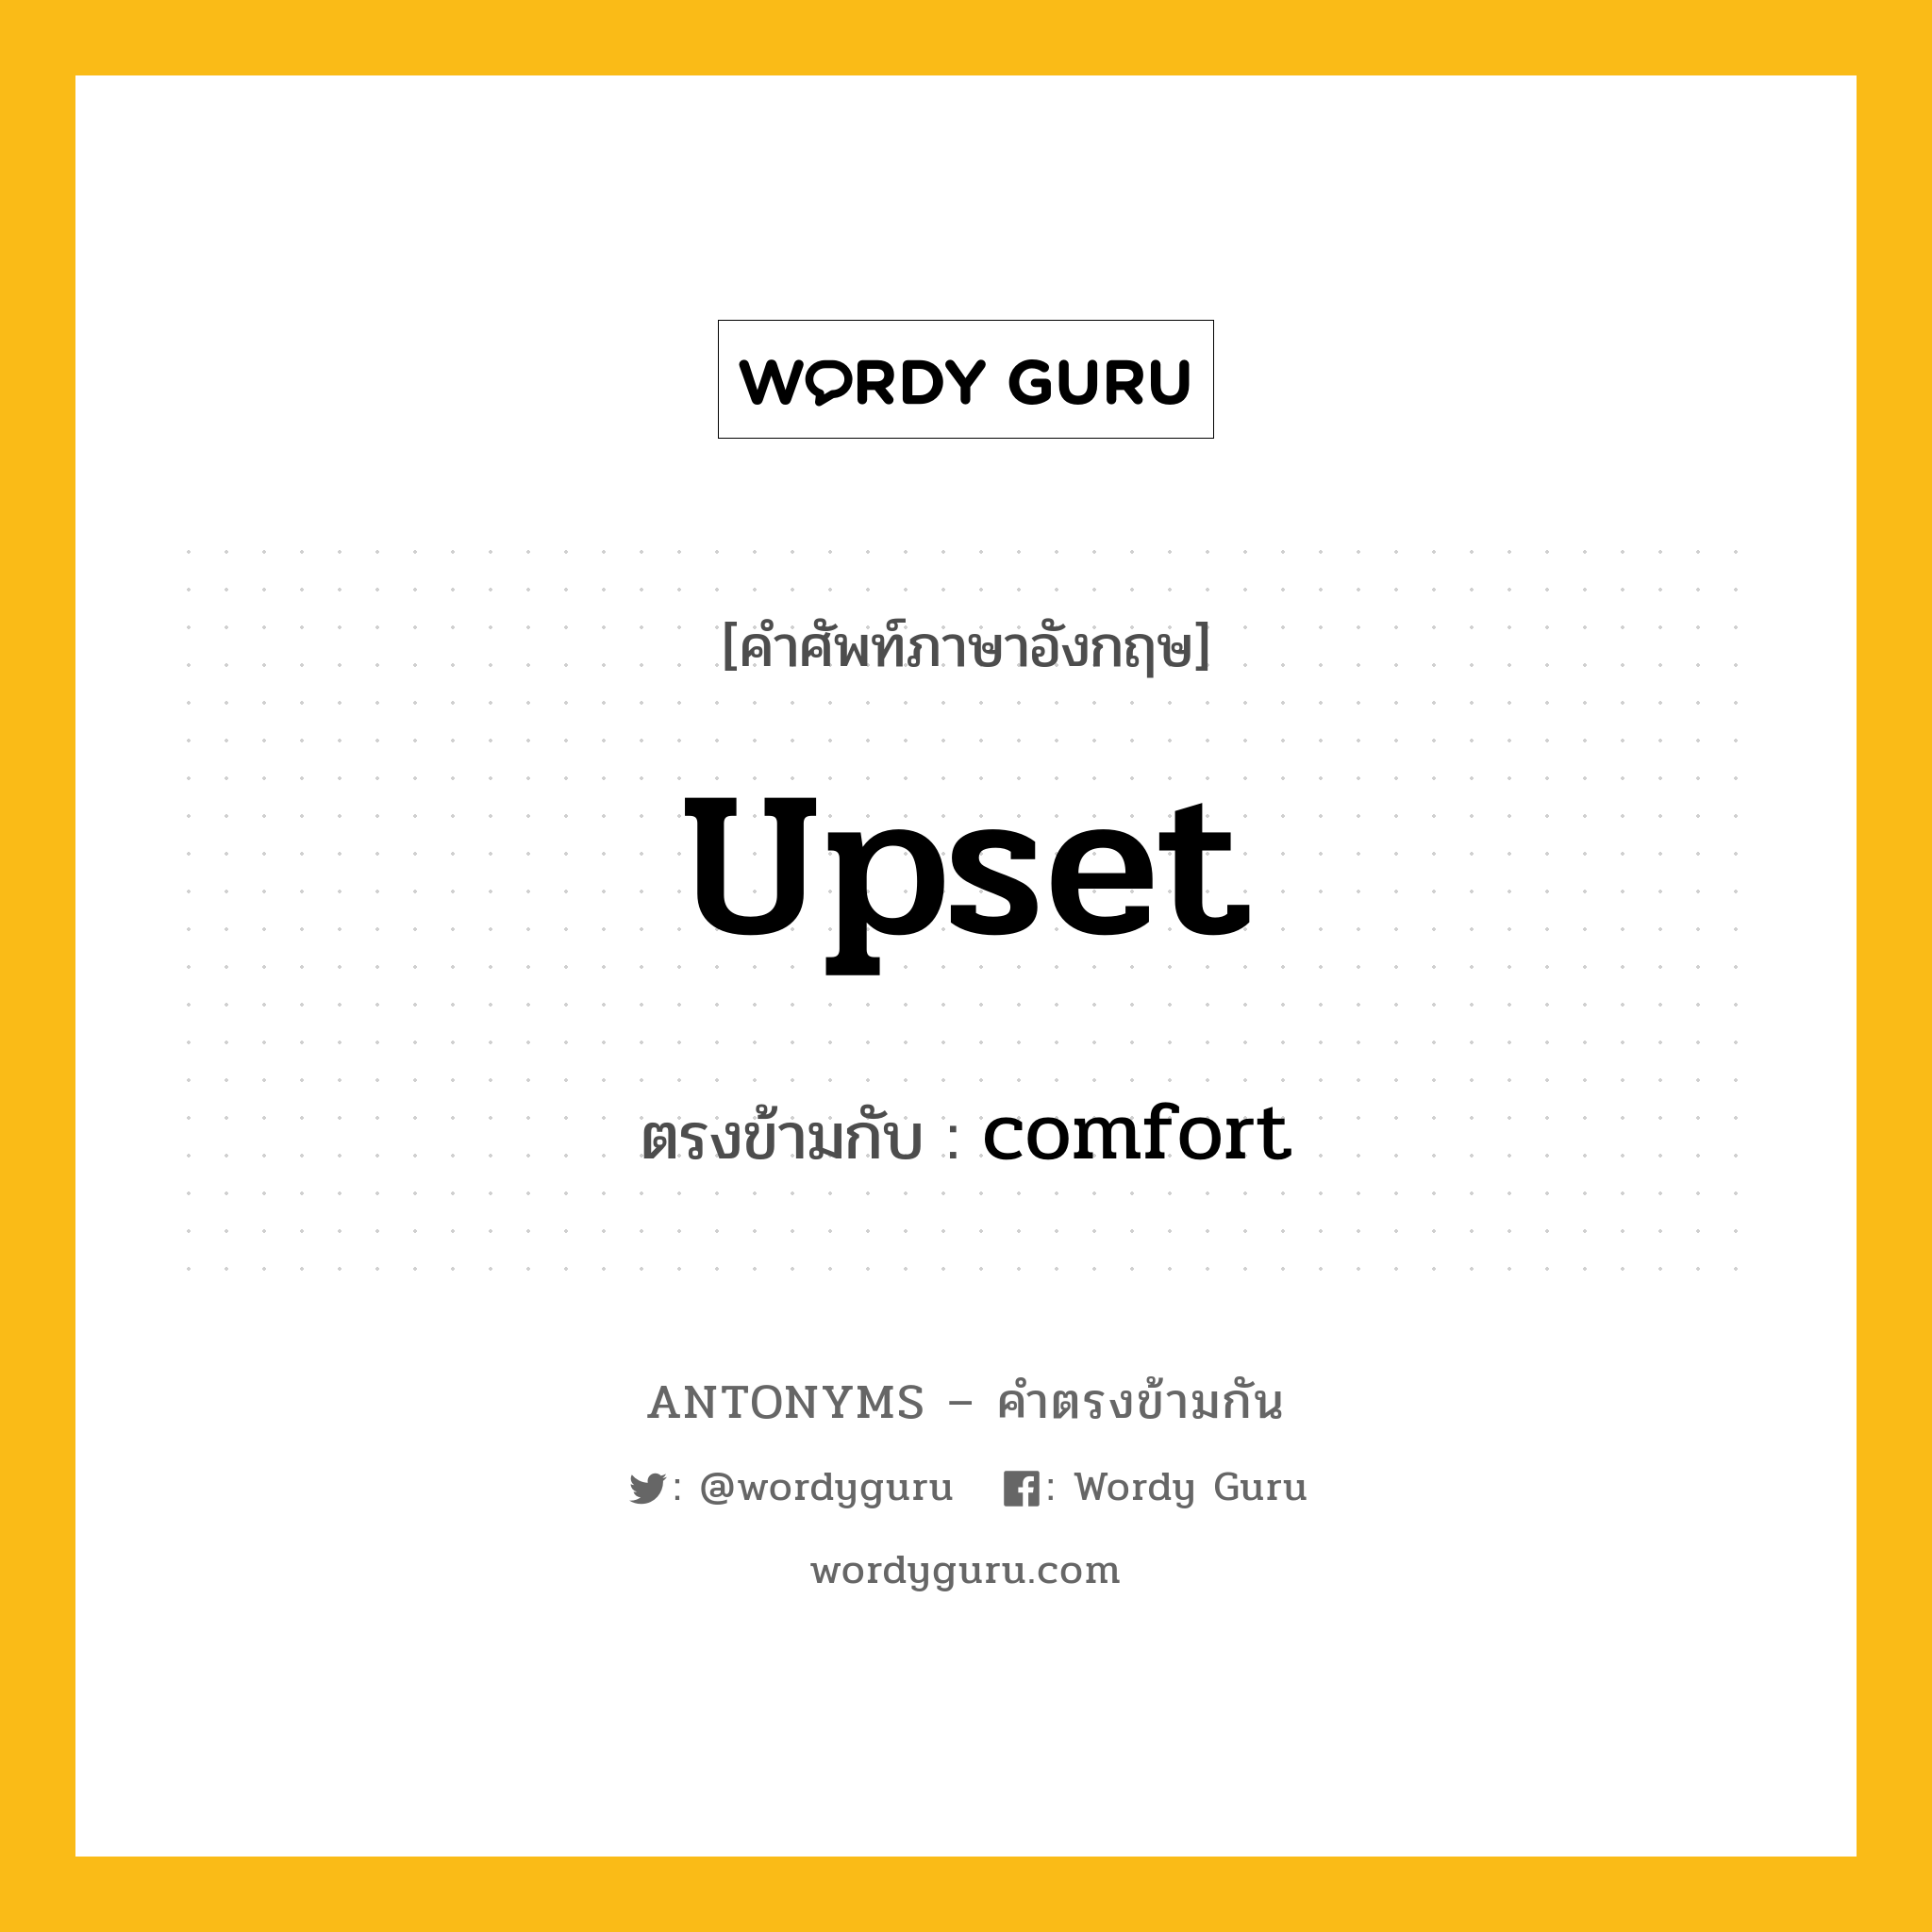 upset เป็นคำตรงข้ามกับคำไหนบ้าง?, คำศัพท์ภาษาอังกฤษ upset ตรงข้ามกับ comfort หมวด comfort